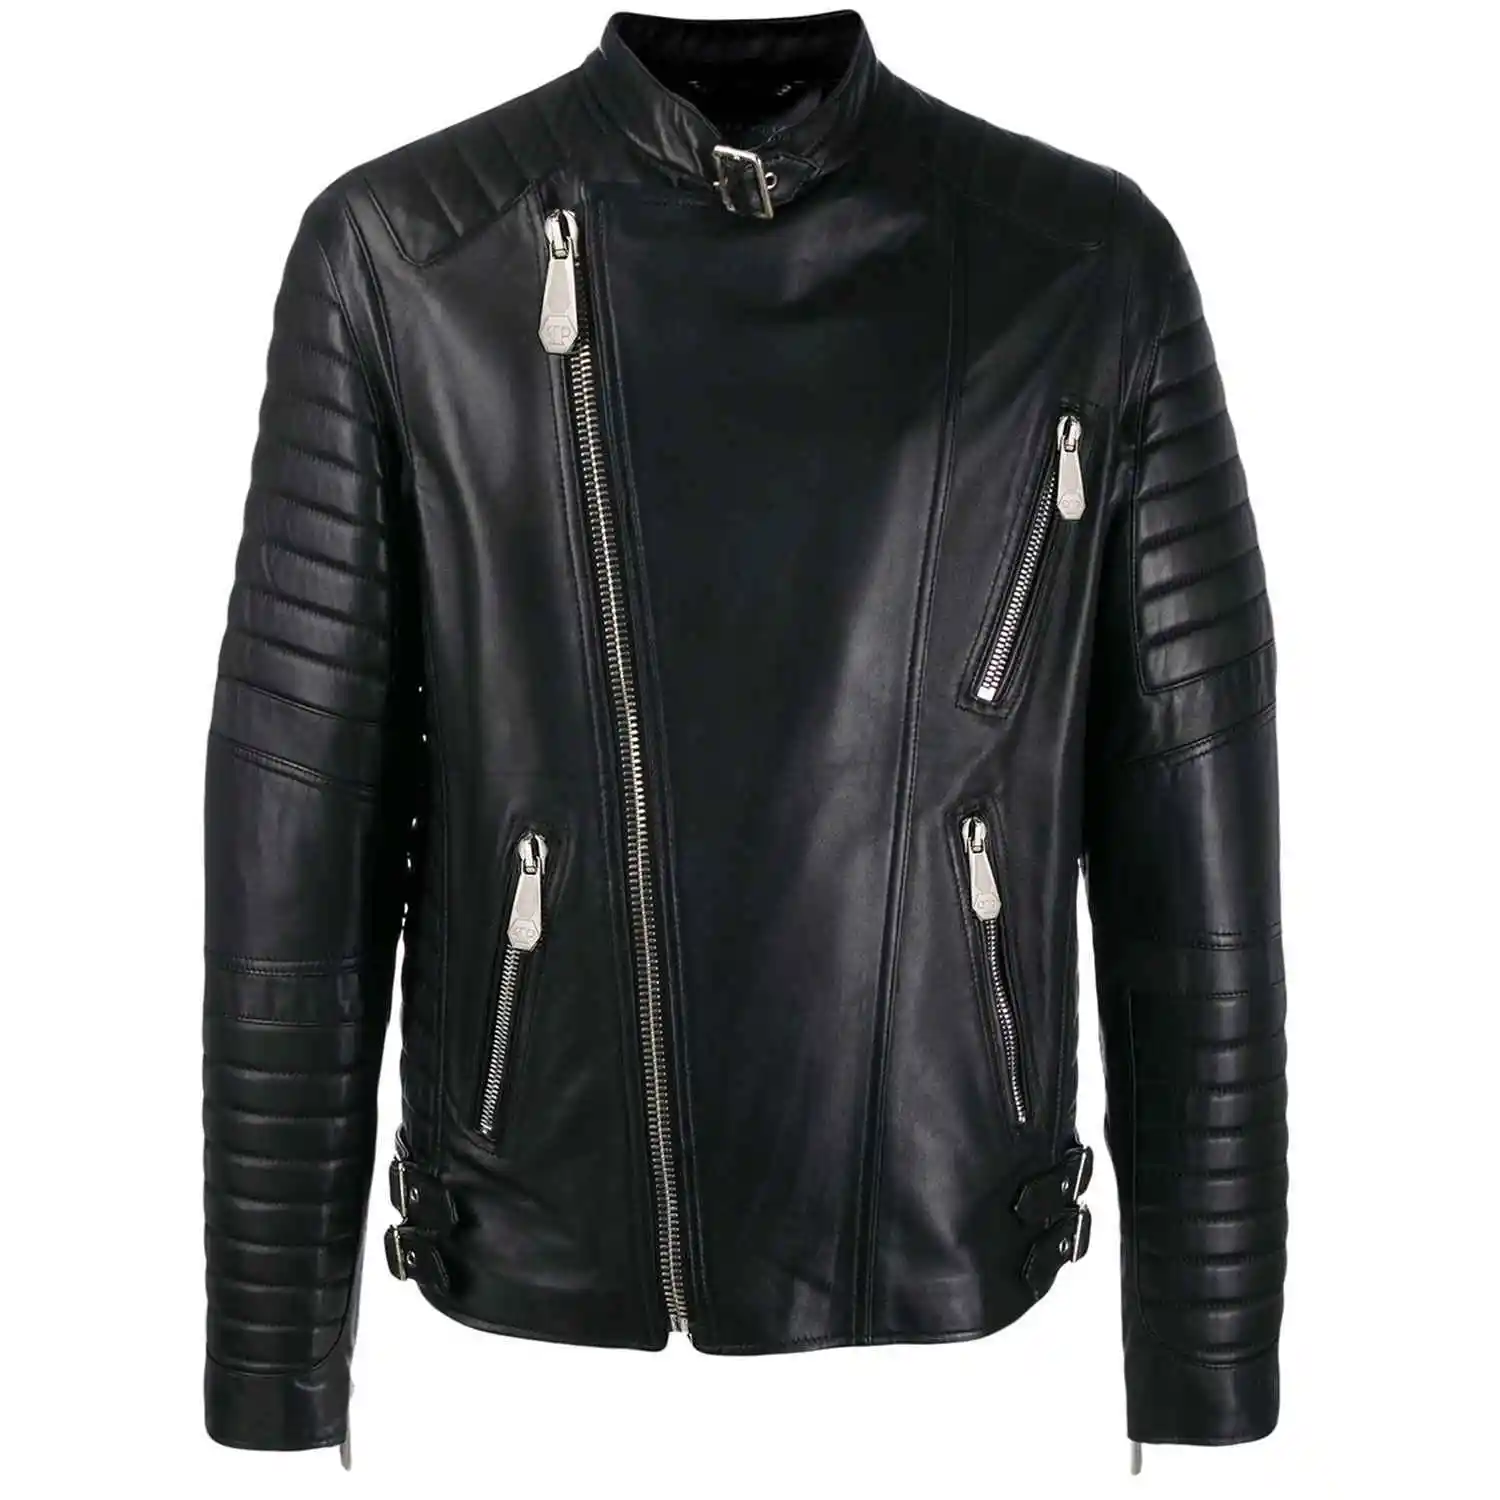 Lederjacke Mantel Plissee-Design Winter gefüttert Warm Slim Black Zipper Fashion Jacken für Männer.